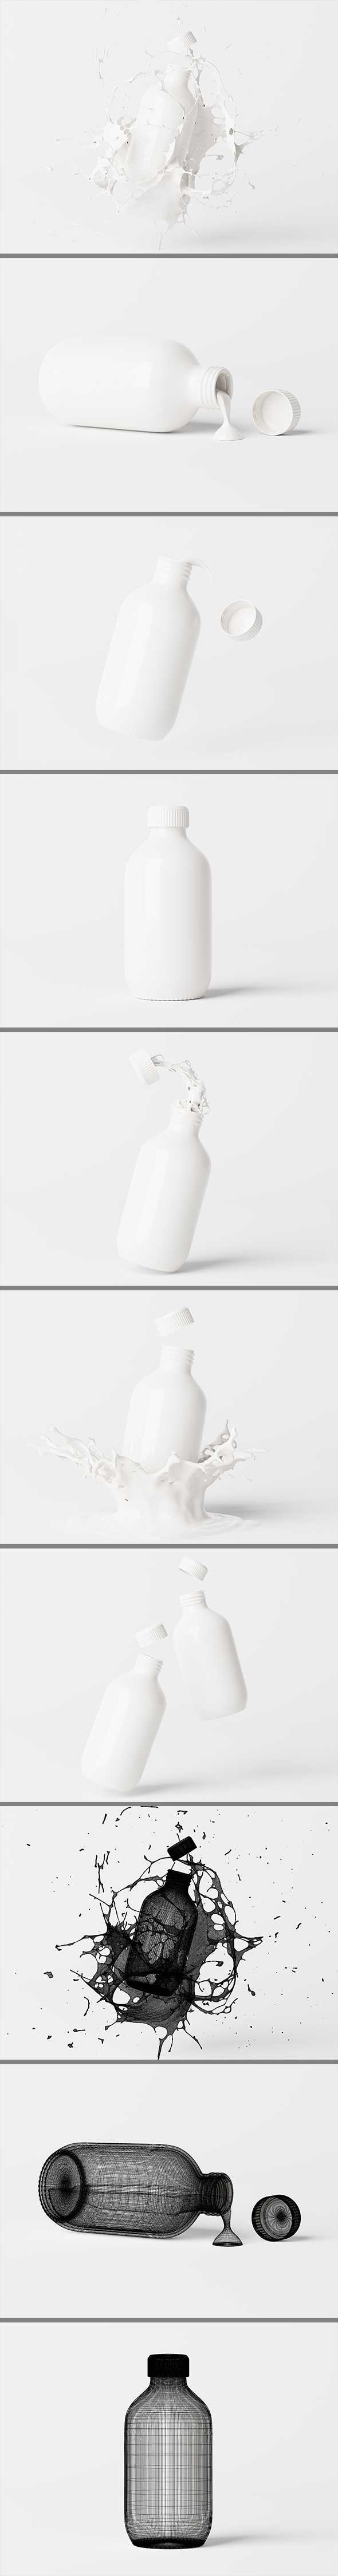 [DOWNLOAD]Plastic Medicine Bottle